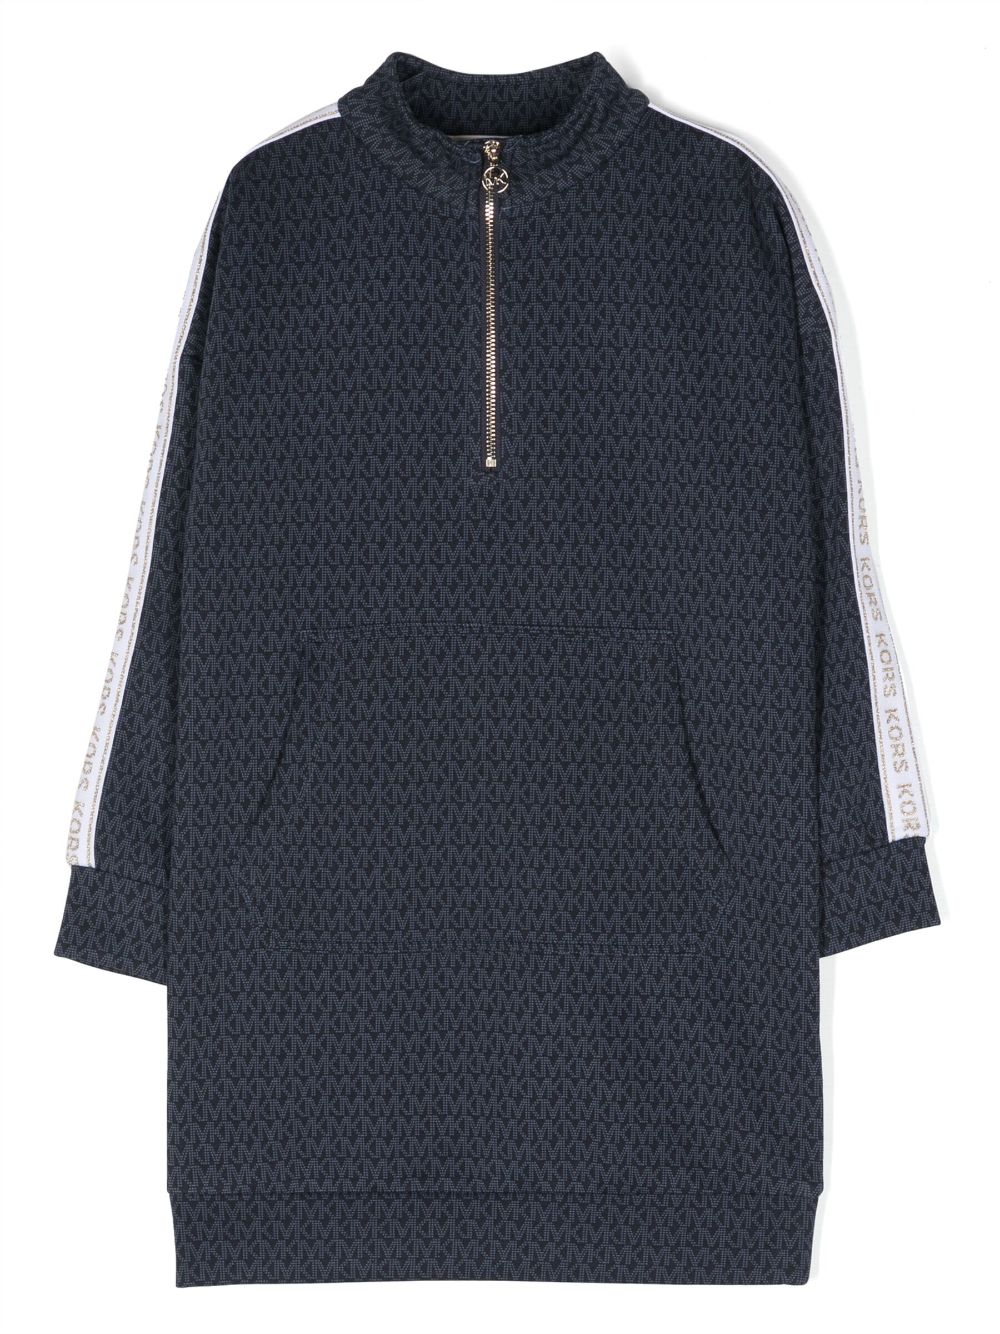 [빠른배송] 마이클코어스 키즈 모노그램 패턴 긴소매 드레스 R12165849